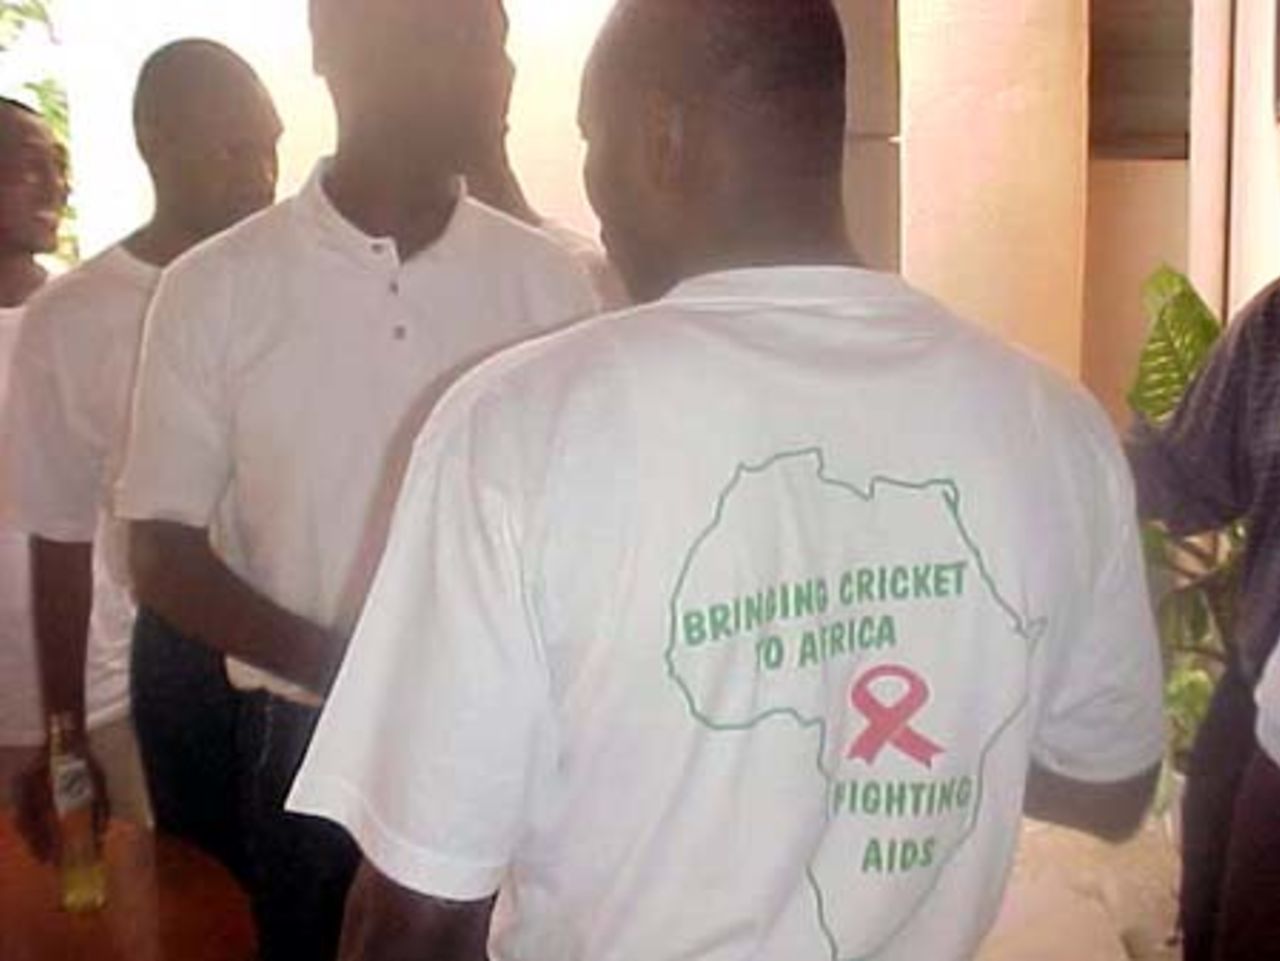 Aids awareness campaign